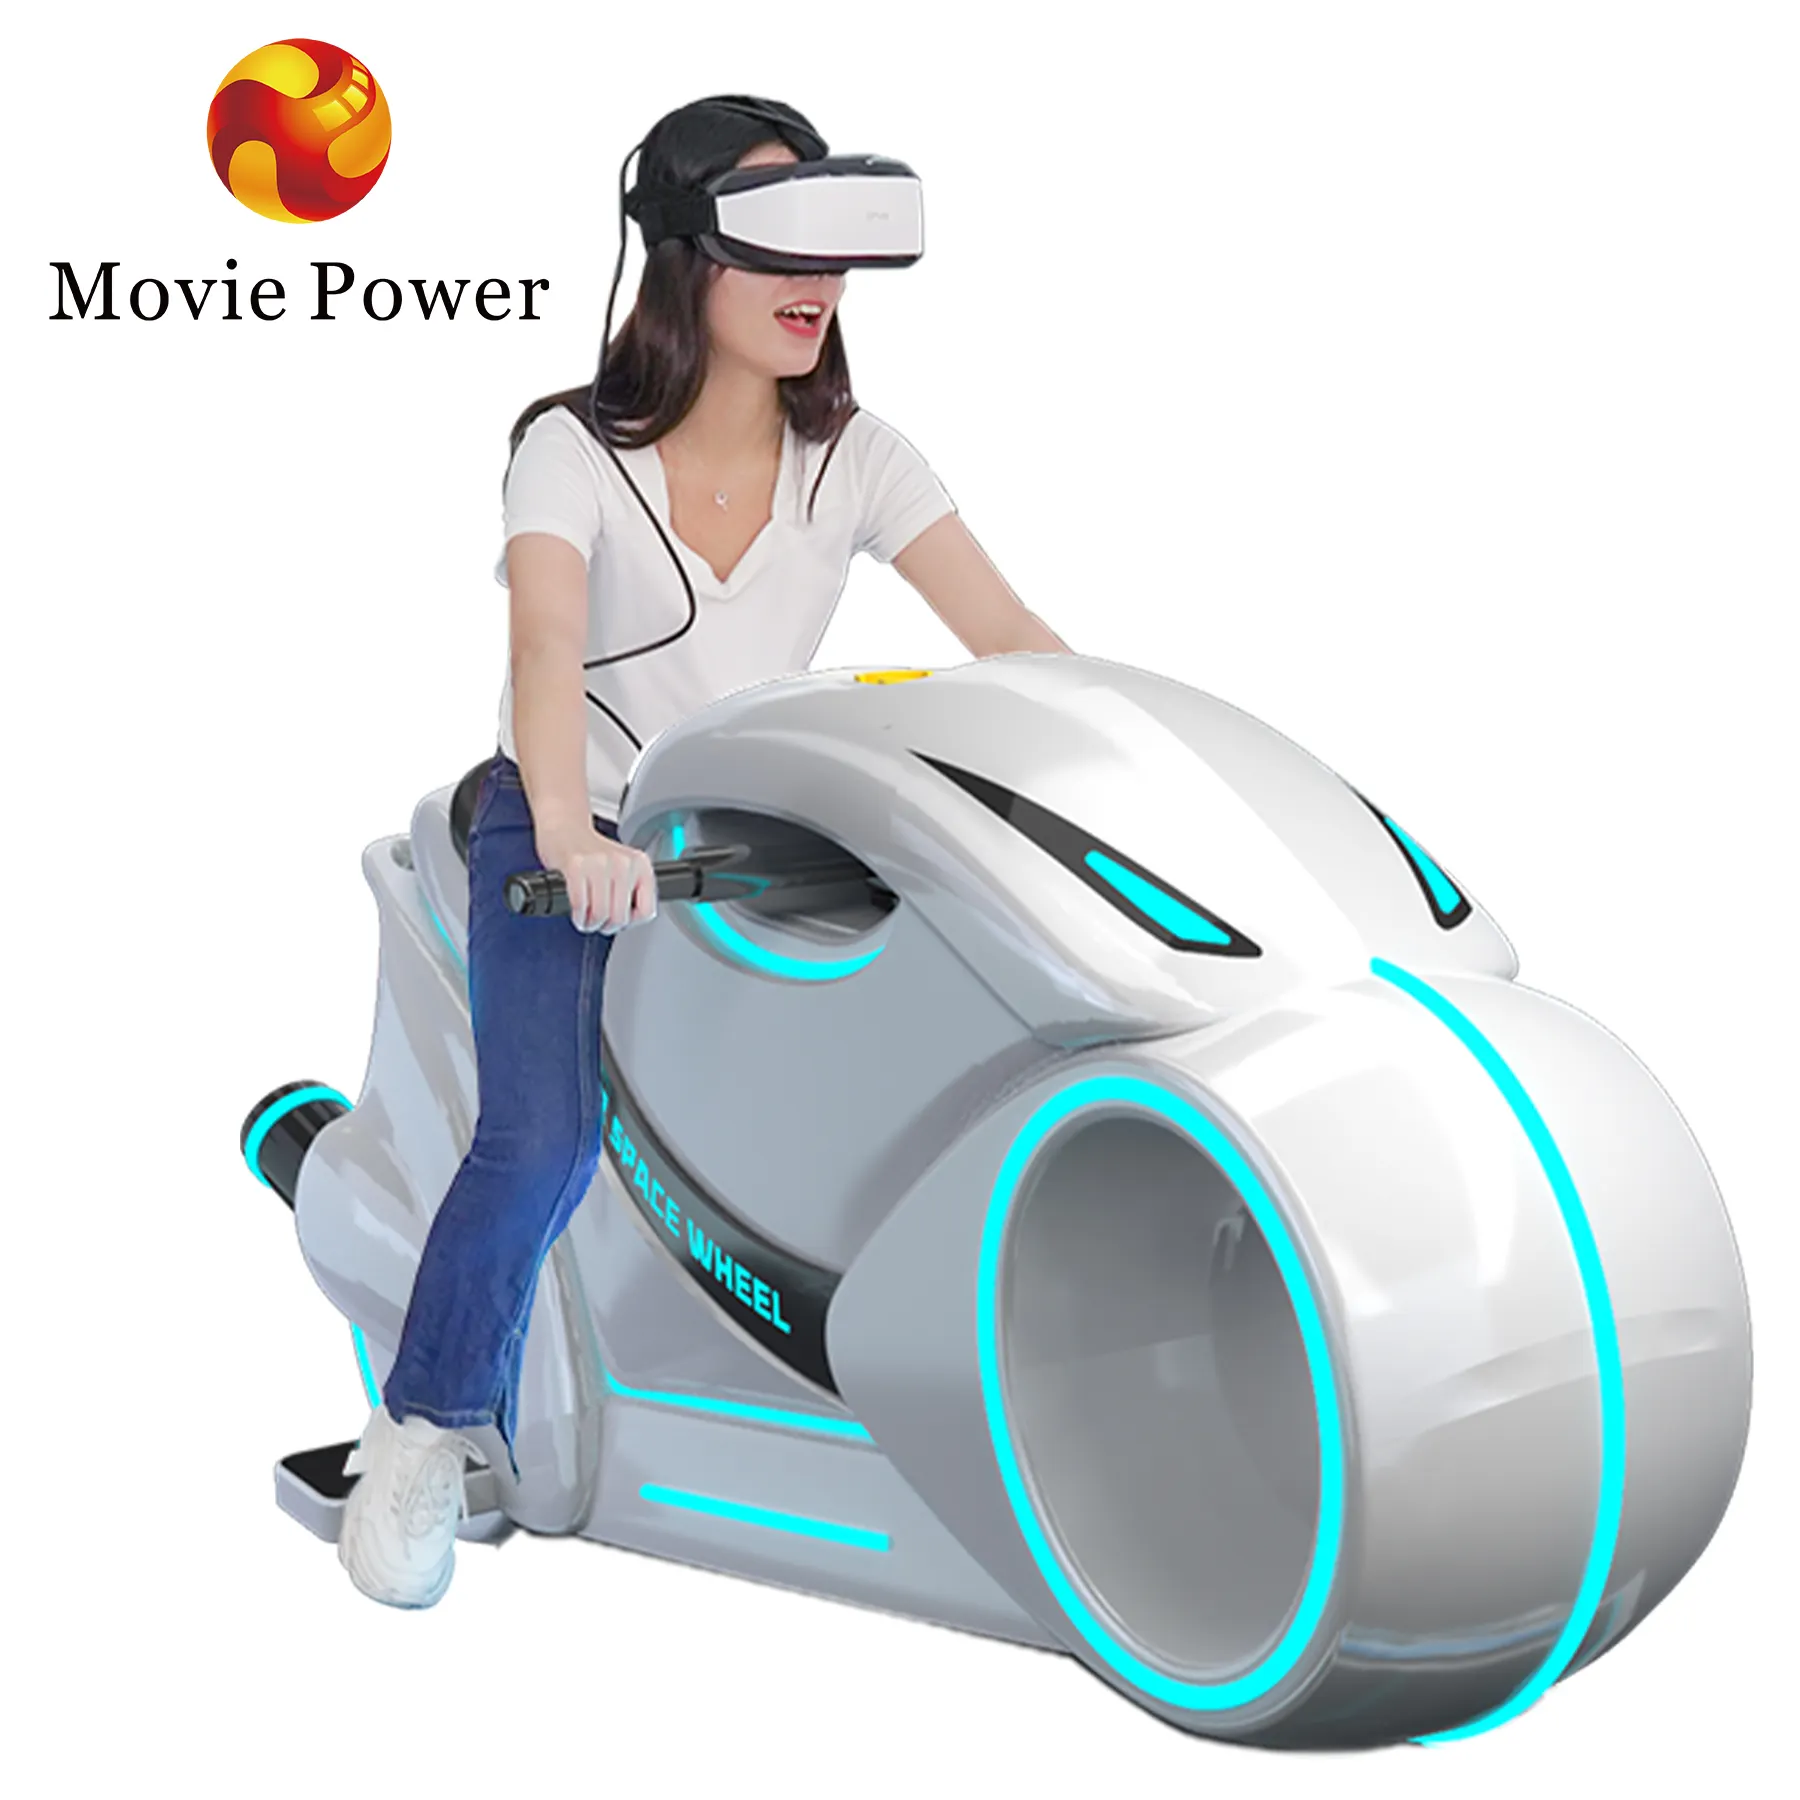 몰입 형 오토바이 경험을위한 Animatronic 모델 VR 시뮬레이터 기계 MR 장비